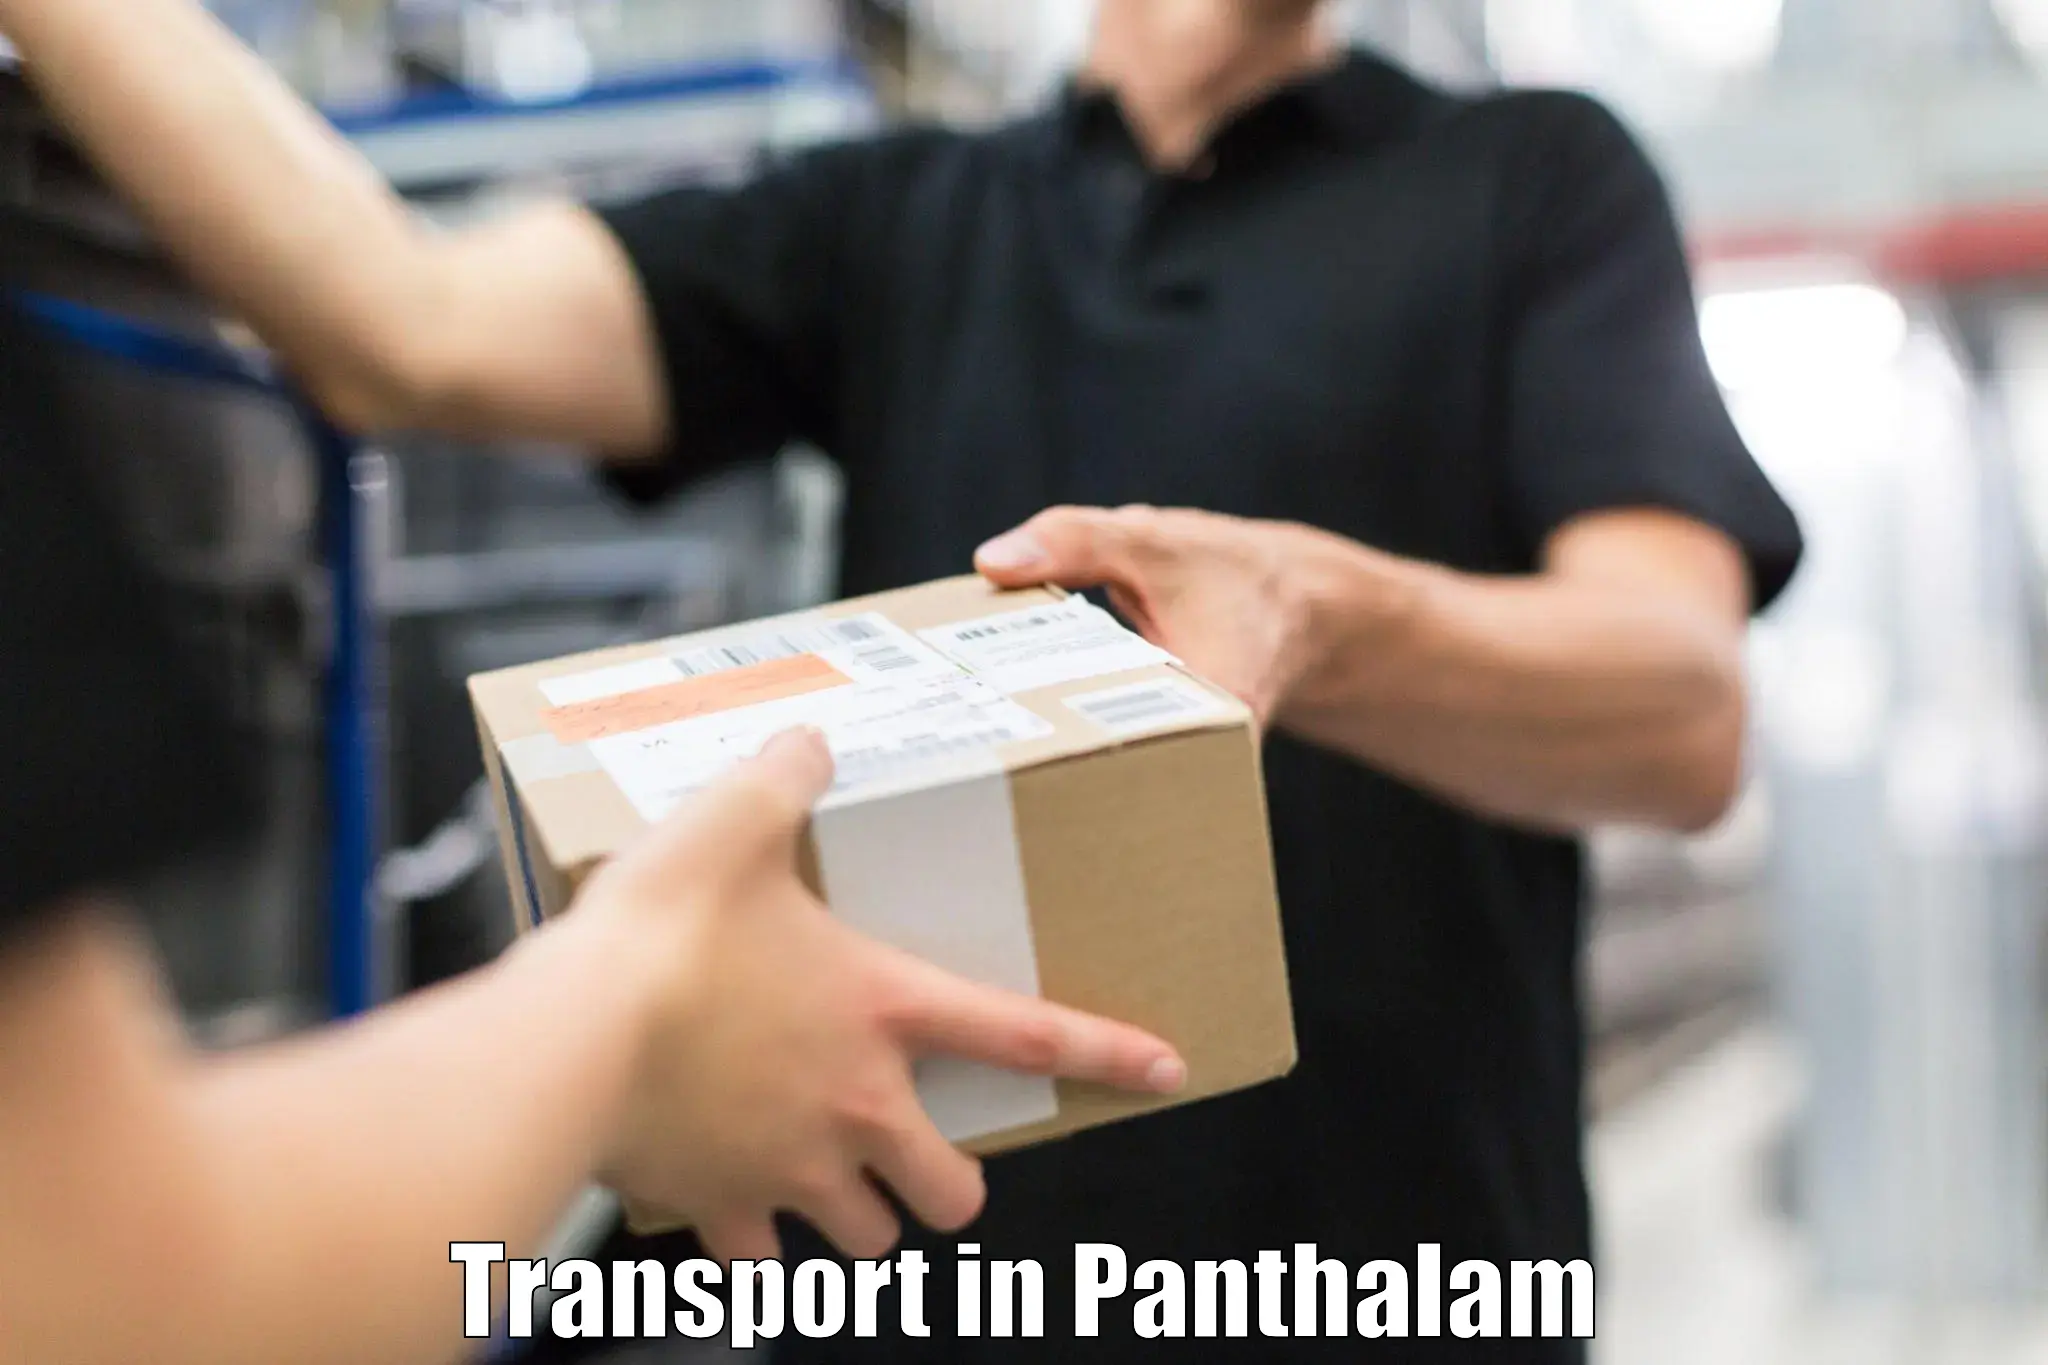 Furniture transport service in Panthalam